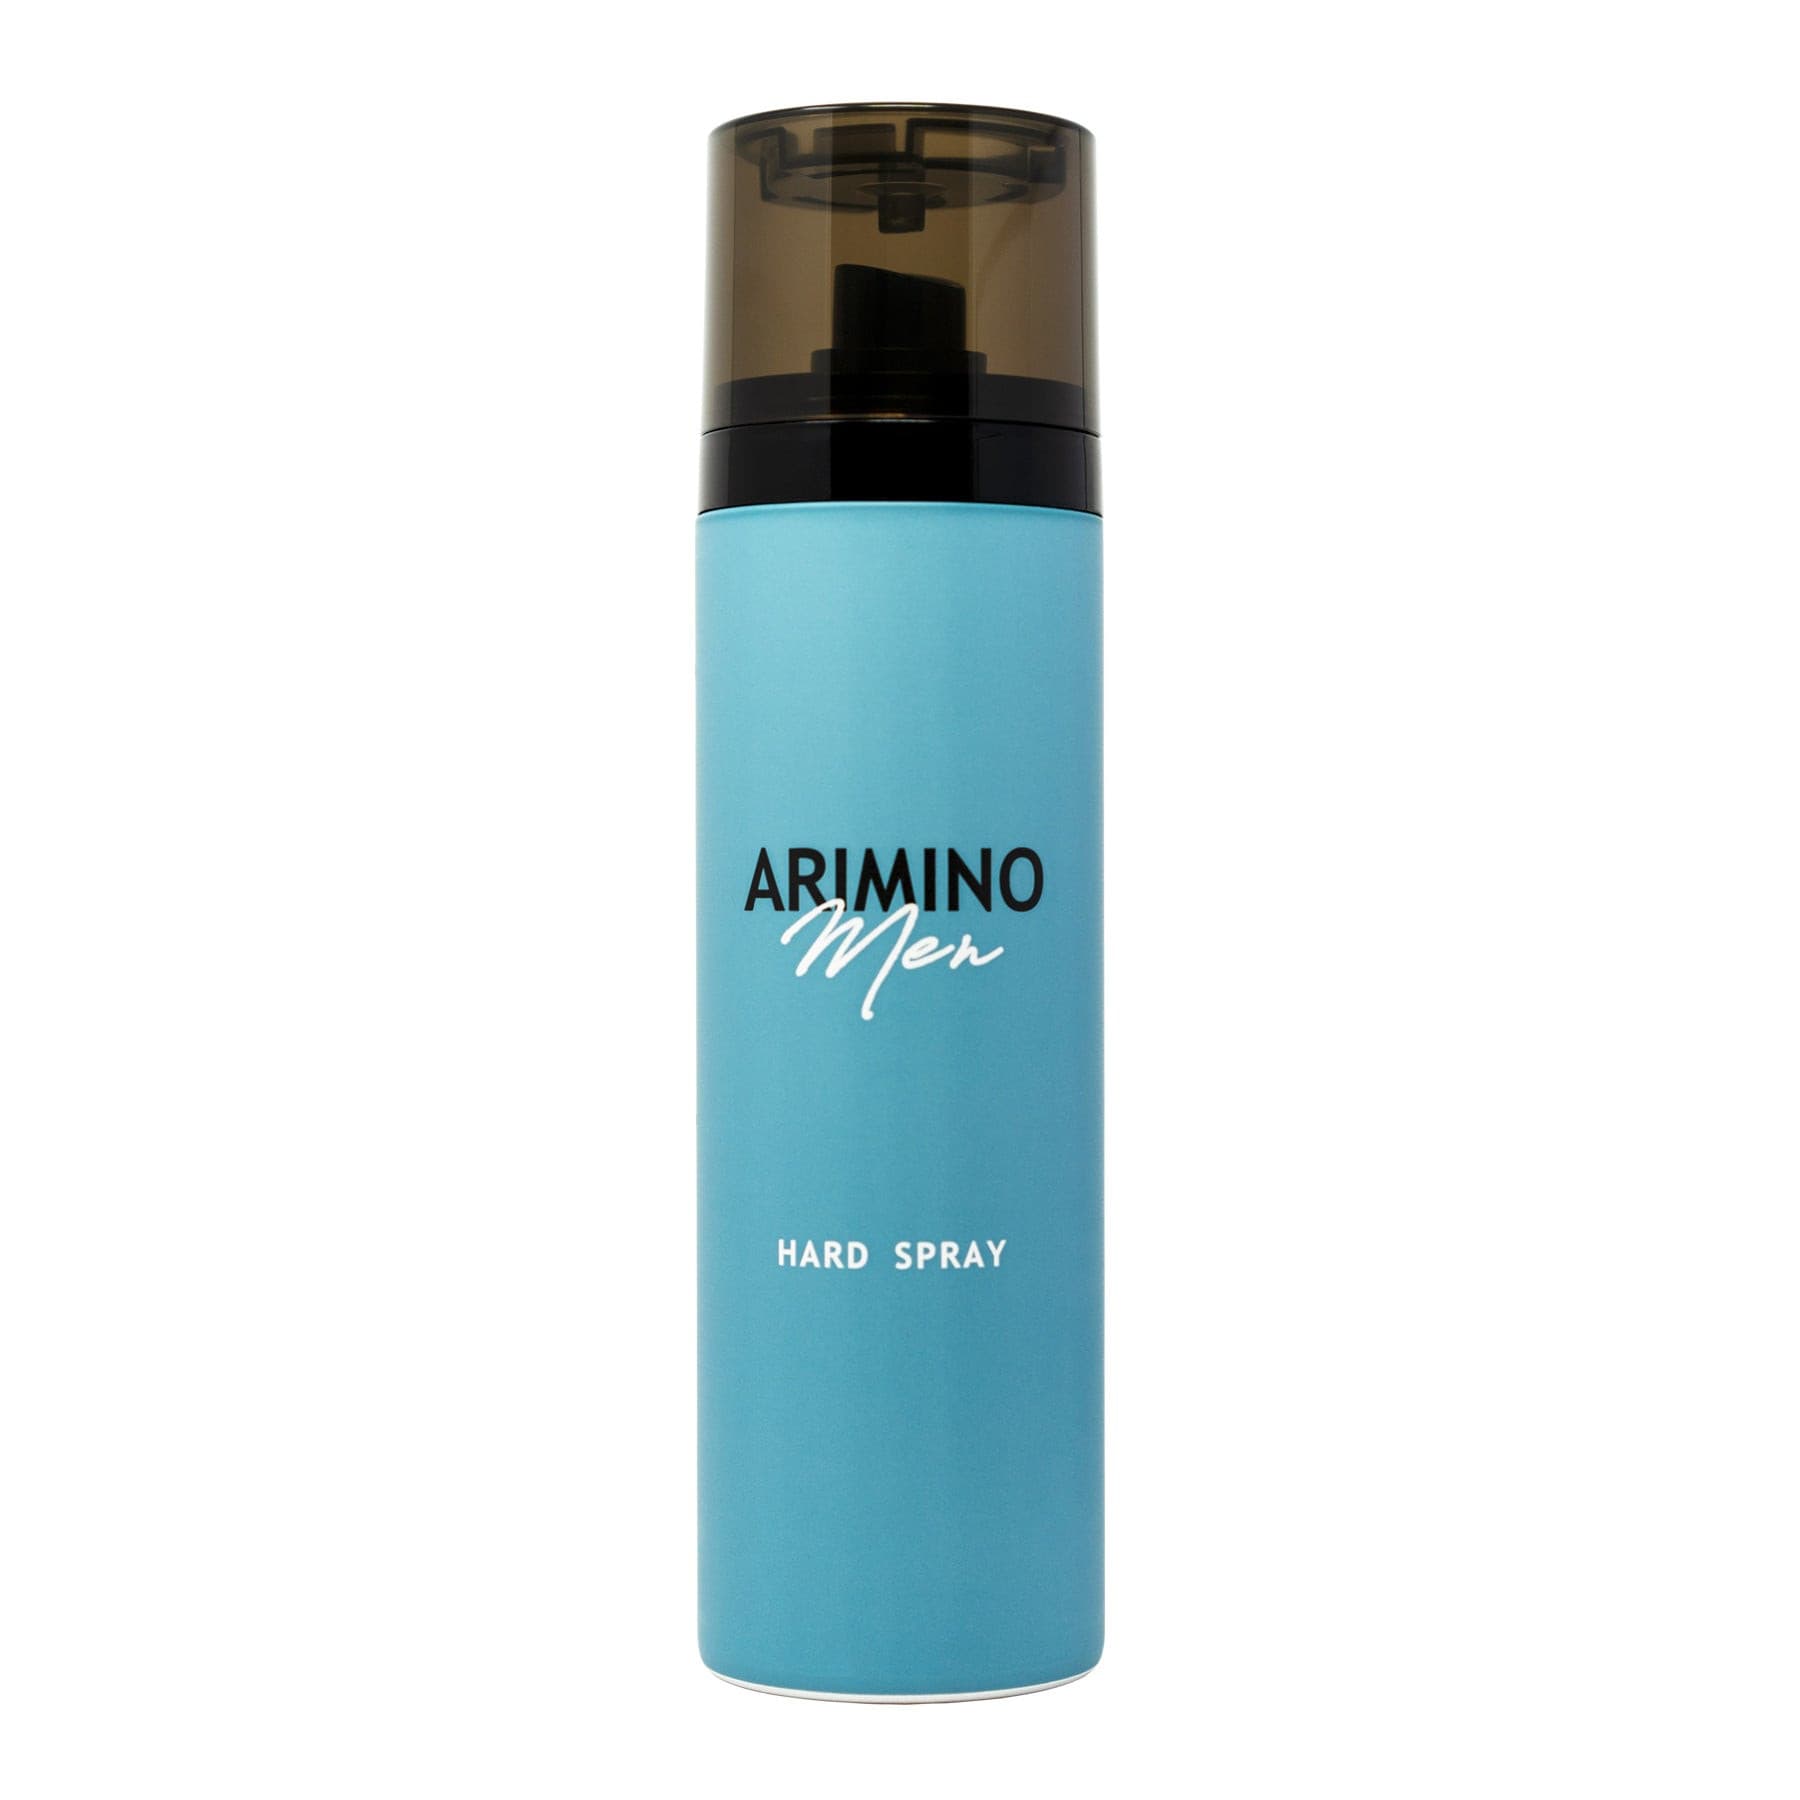 Arimino Men Hard Spray